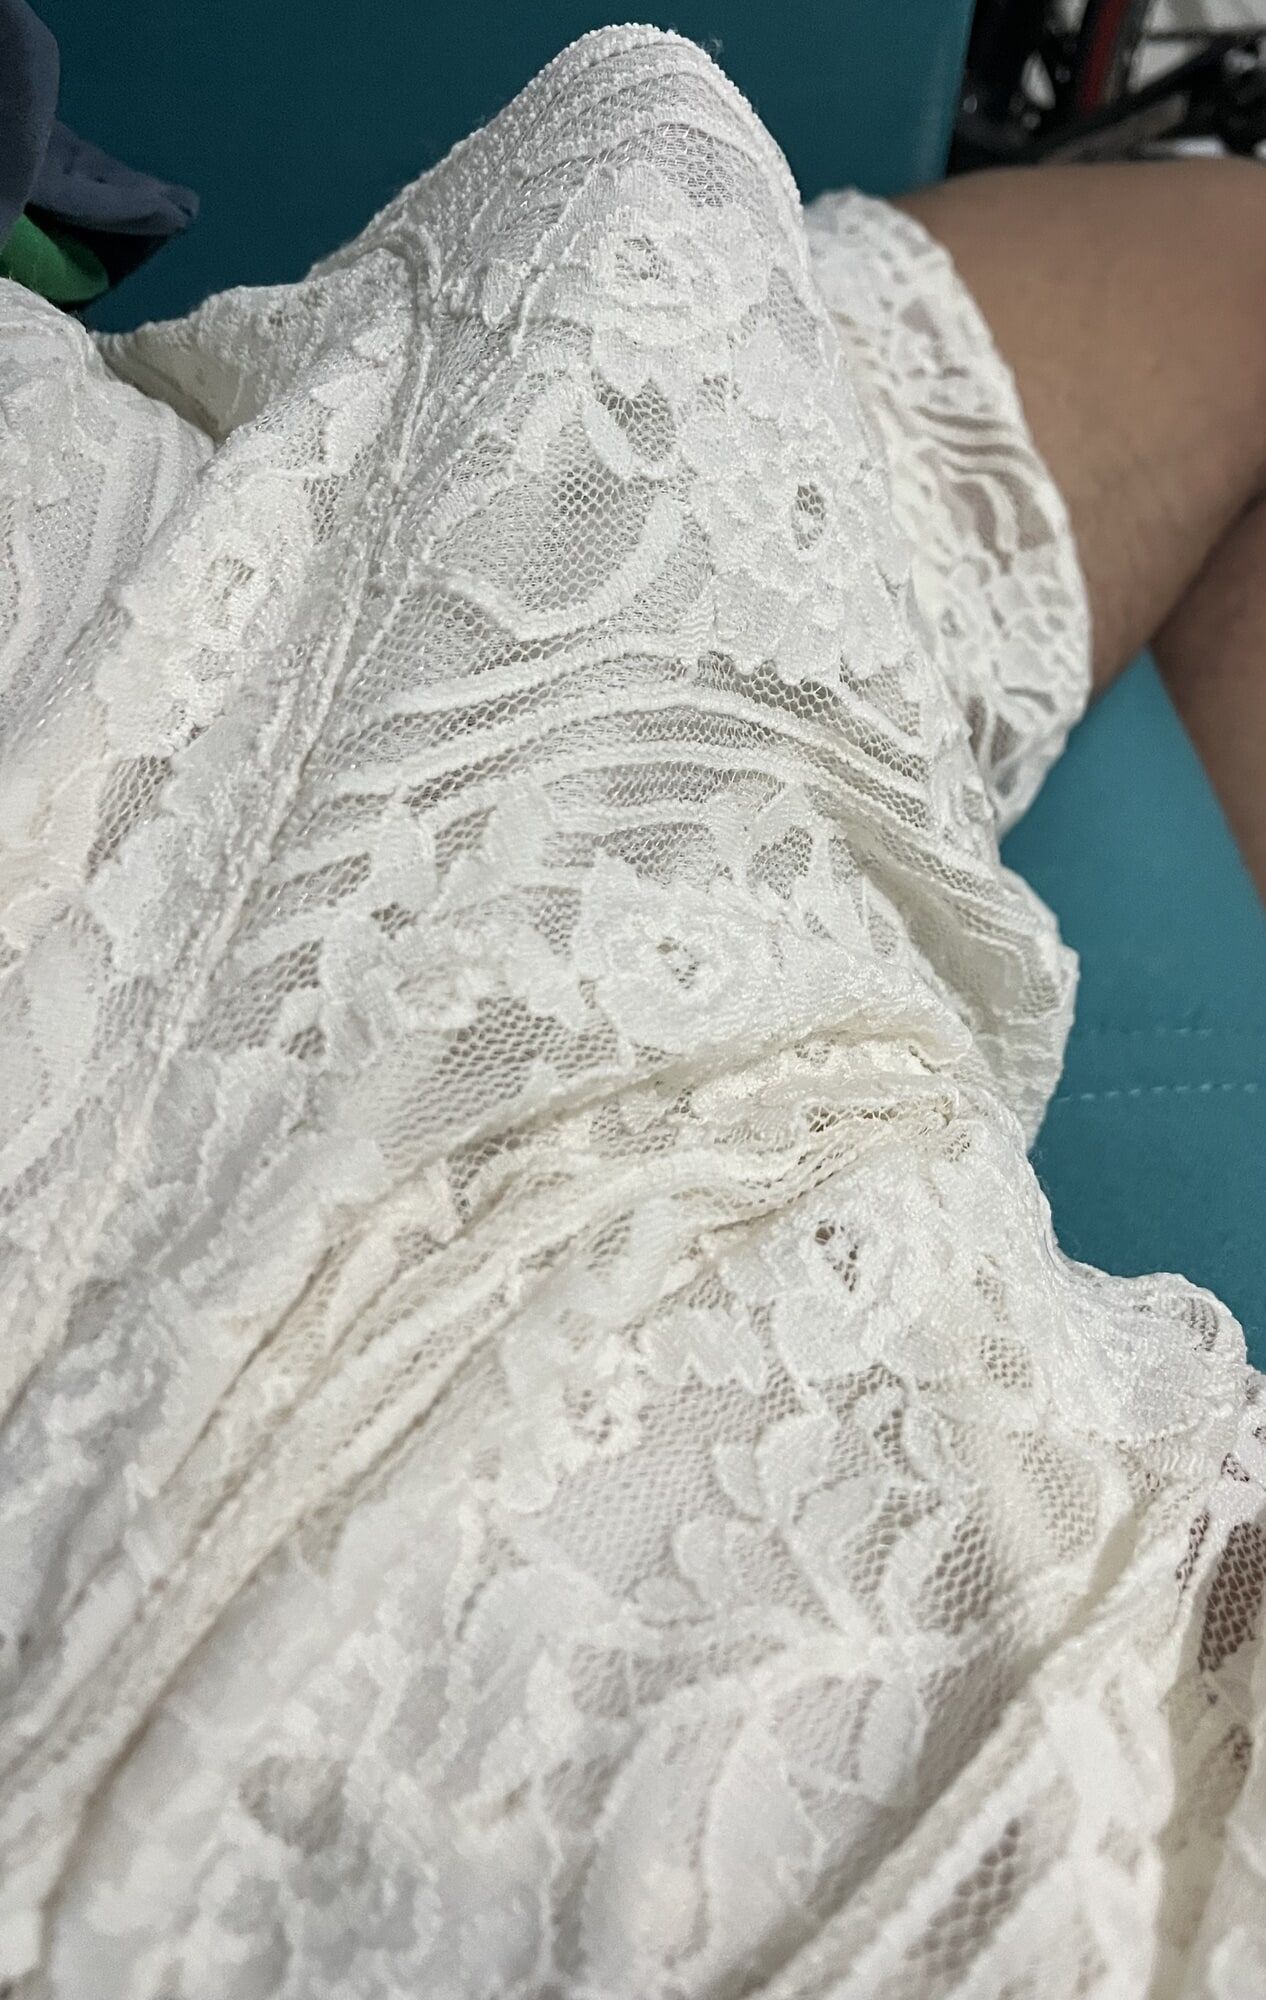 white mini skirt